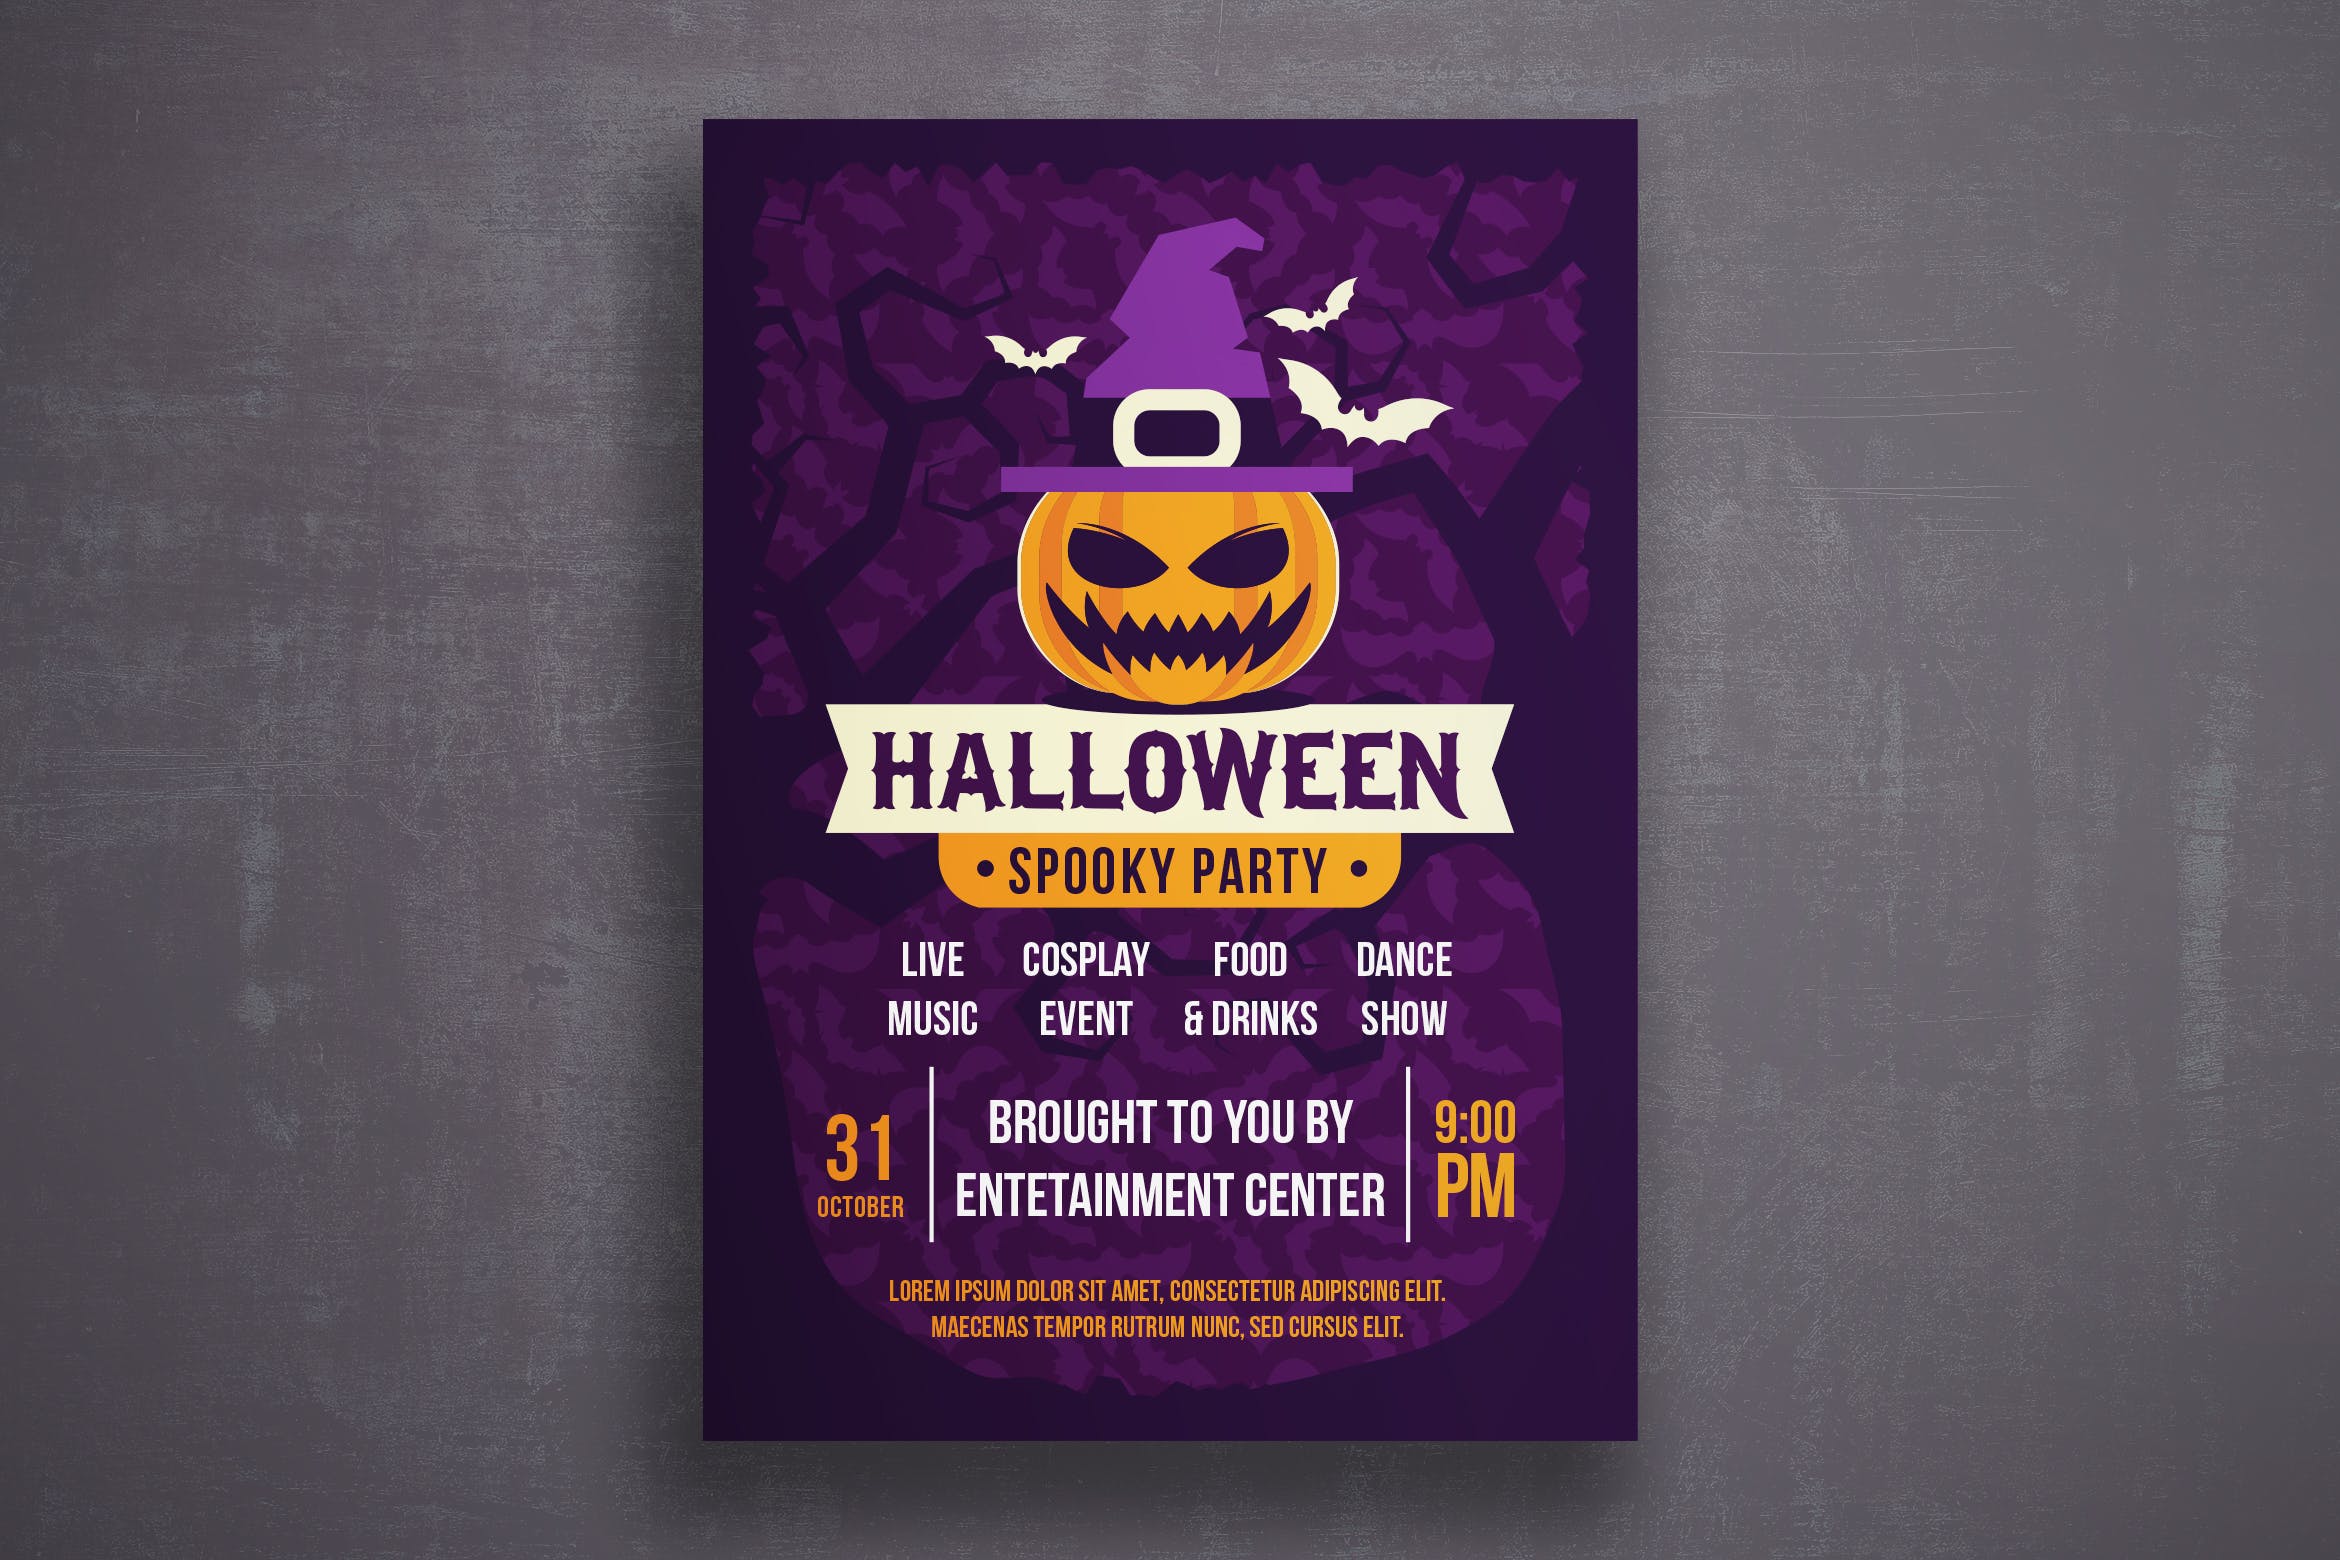 万圣节恐怖之夜活动邀请海报传单素材库精选PSD模板v4 Halloween flyer template插图